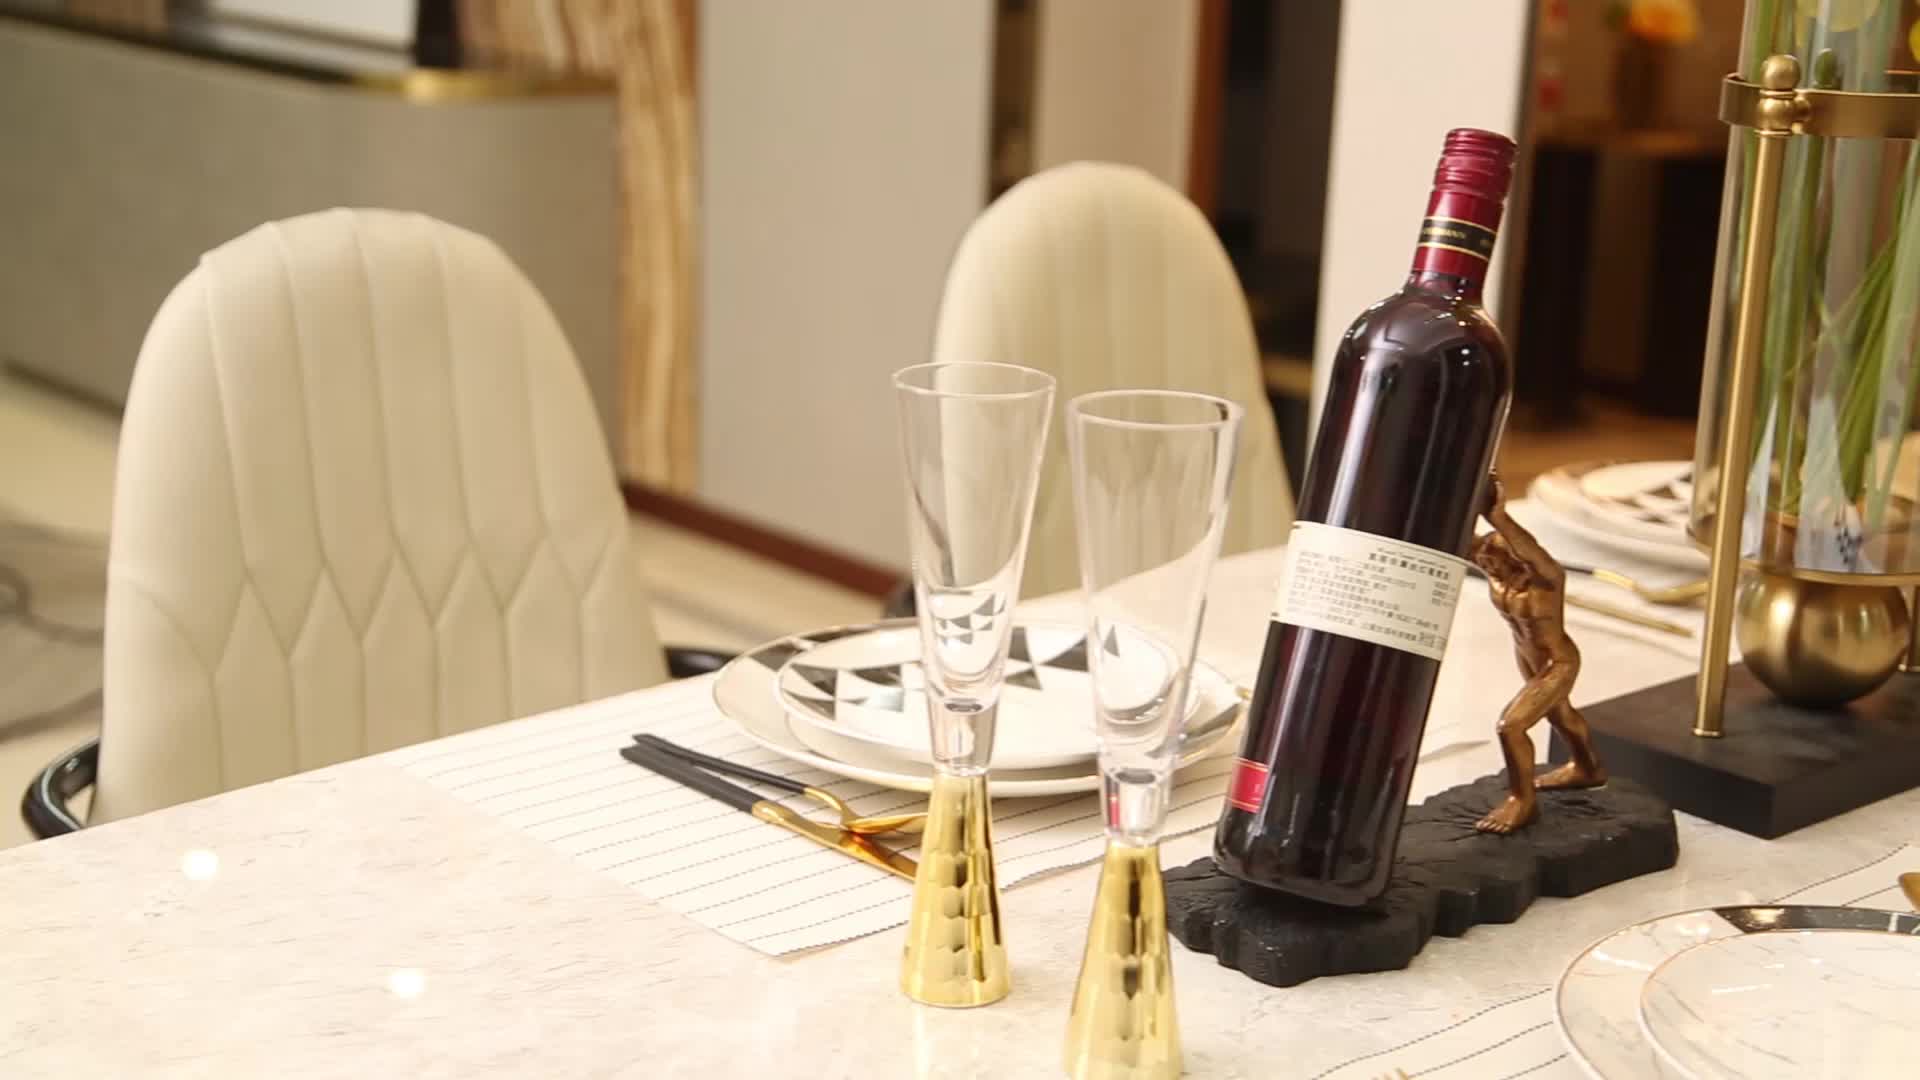 레드 와인 선반 장식 크리 에이 티브 헤라클레스 와인 트레이 현대 가벼운 럭셔리 거실 와인 캐비닛 장식 와인 병 디스플레이 와인 잔